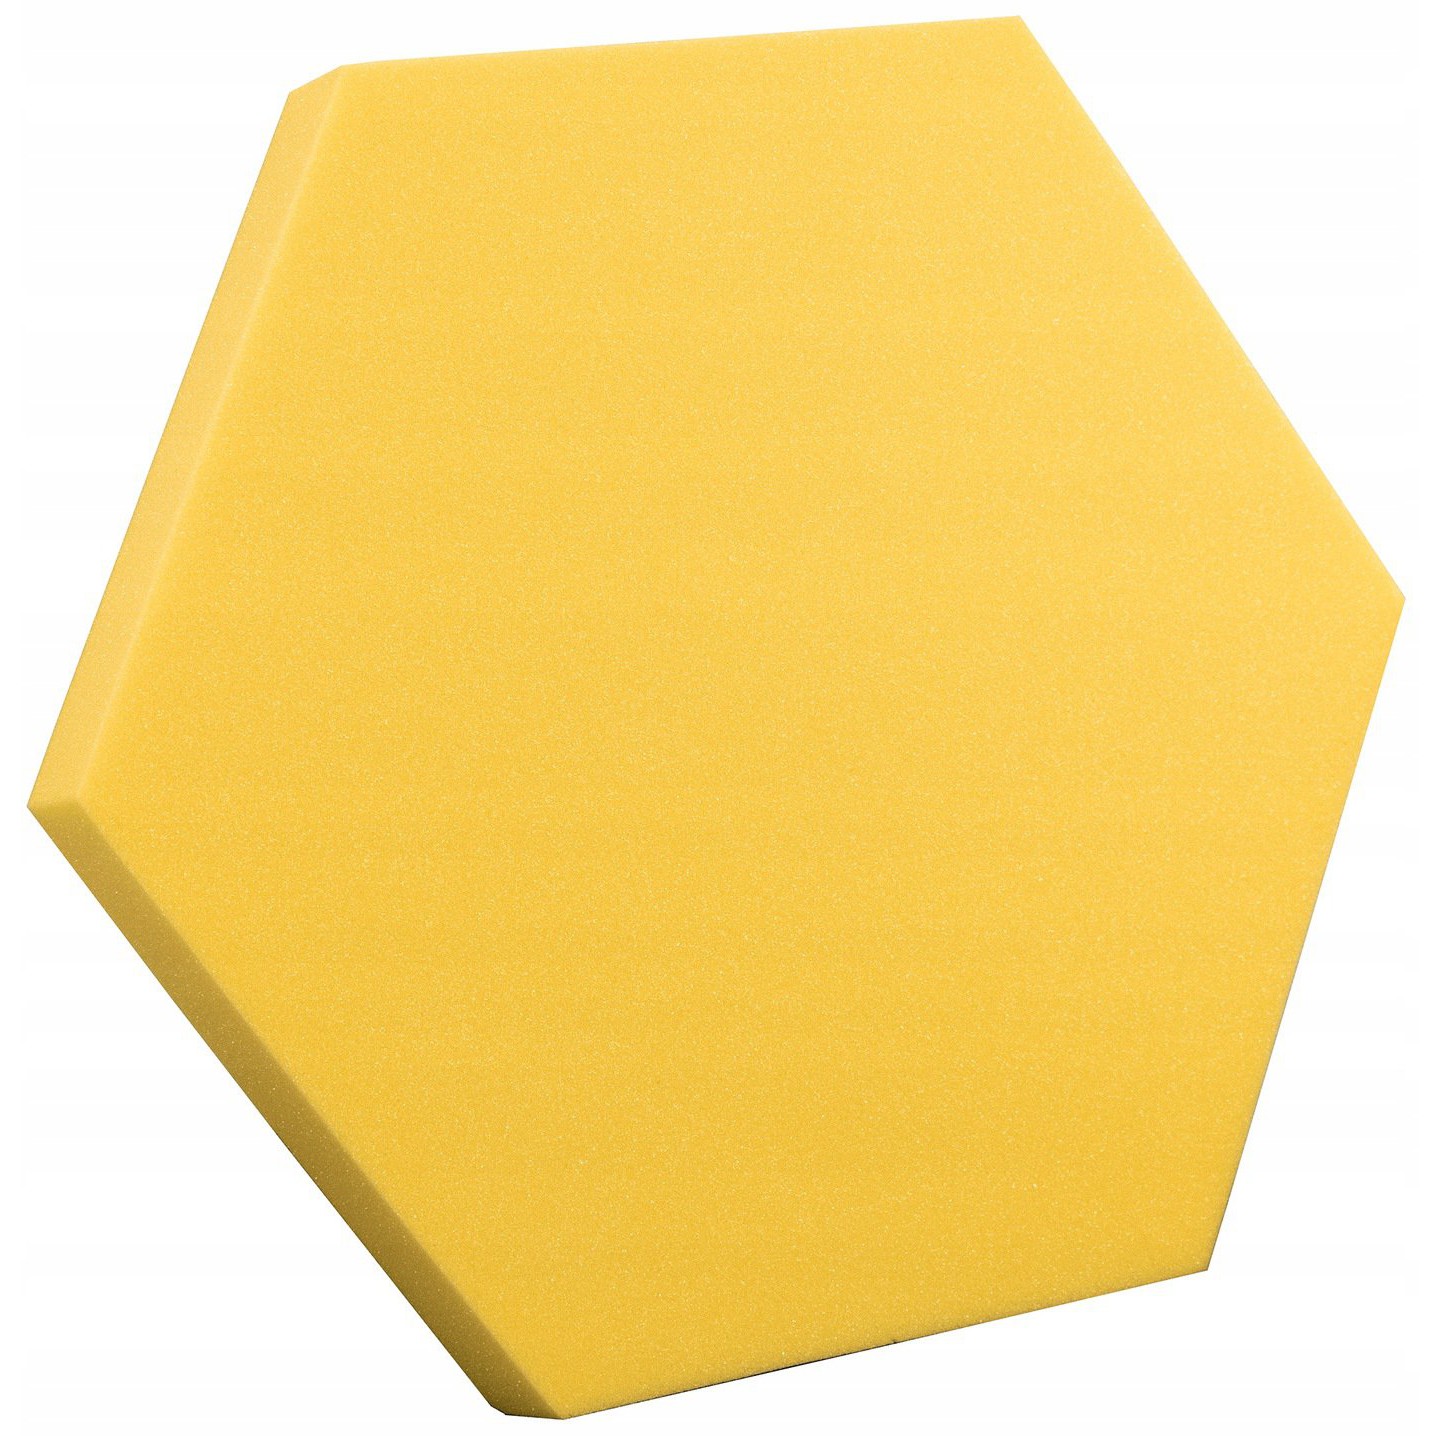 Akusztikus panel Hatszögletű sárga 50x50cmx5cm önkioltó nem gyúlékony hab omegamix.hu